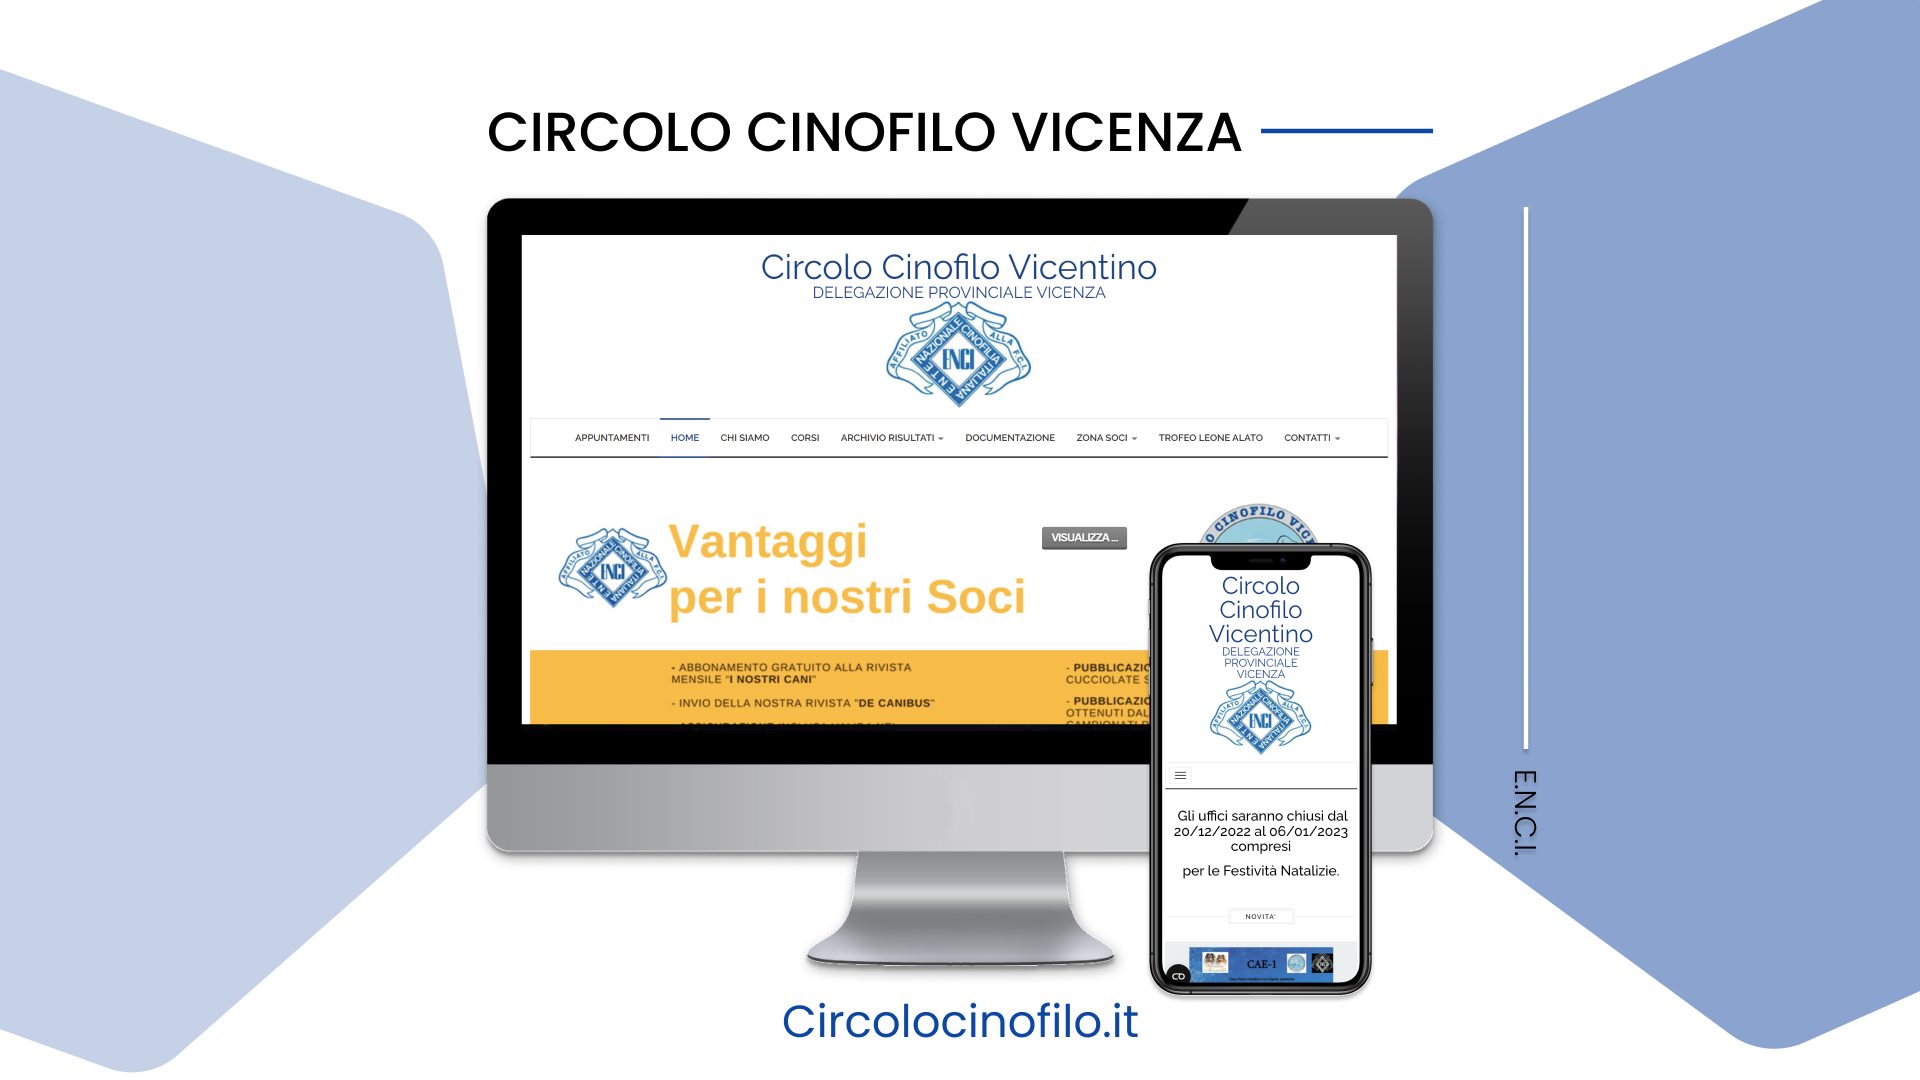 Circolo Cinofilo Vicenza